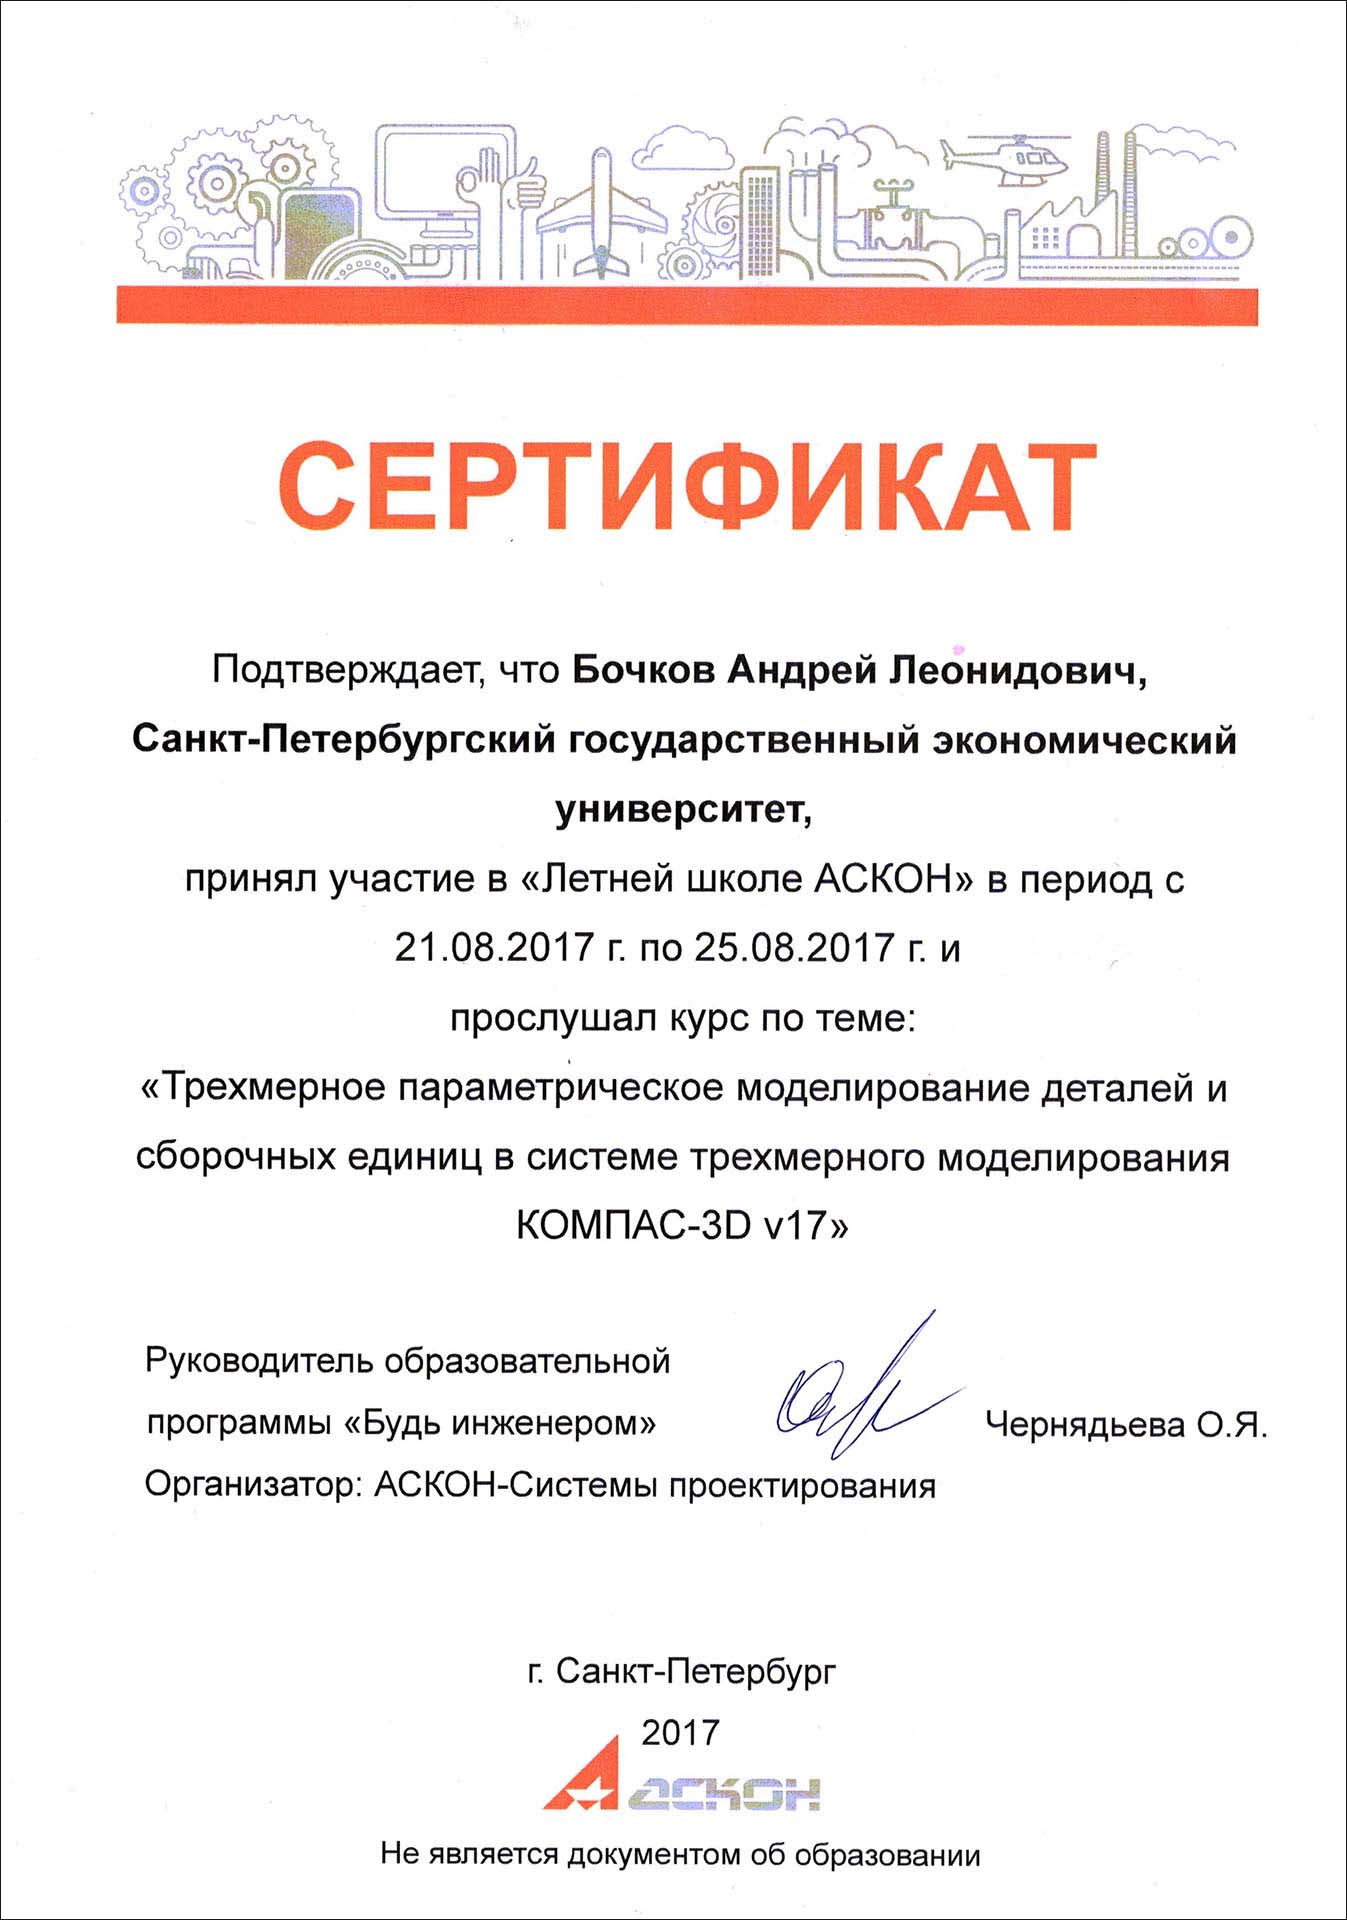 Сертификат КОМПАС-3D V 17